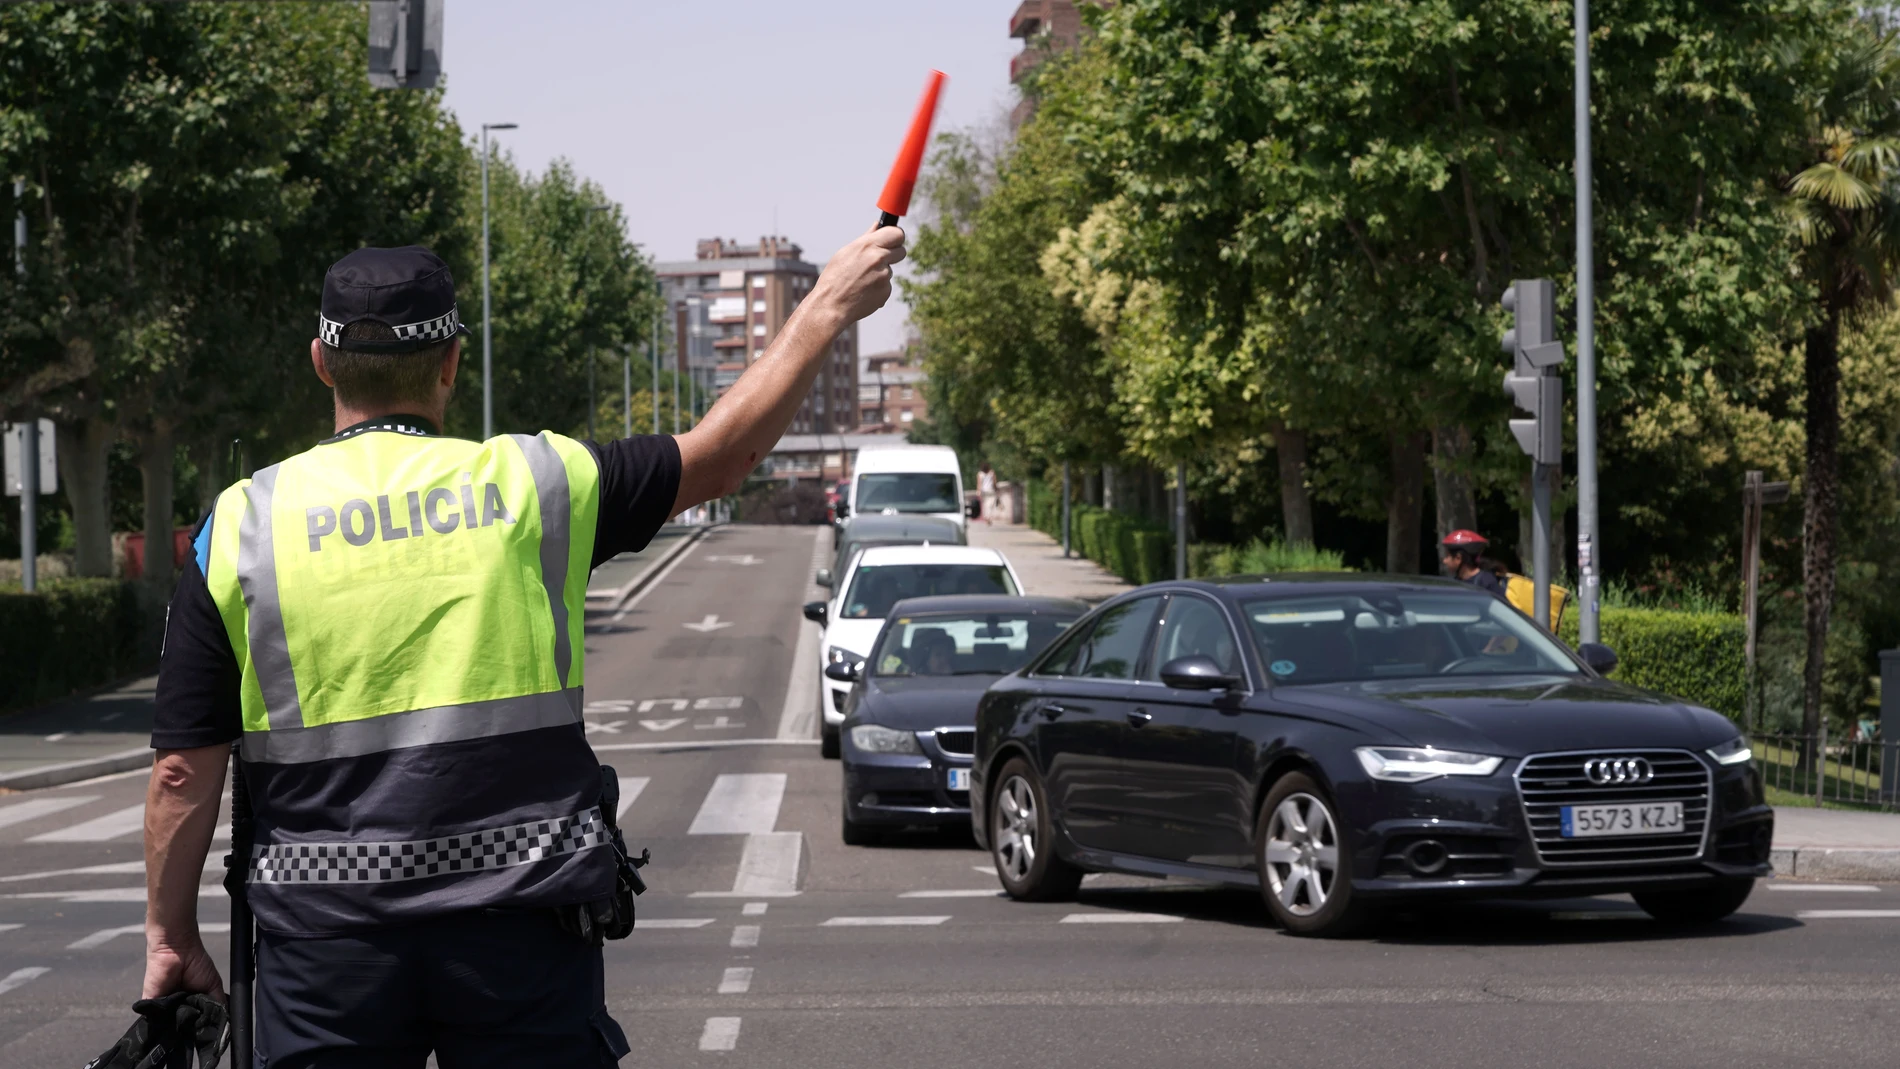 Restricción del tráfico en Valladolid